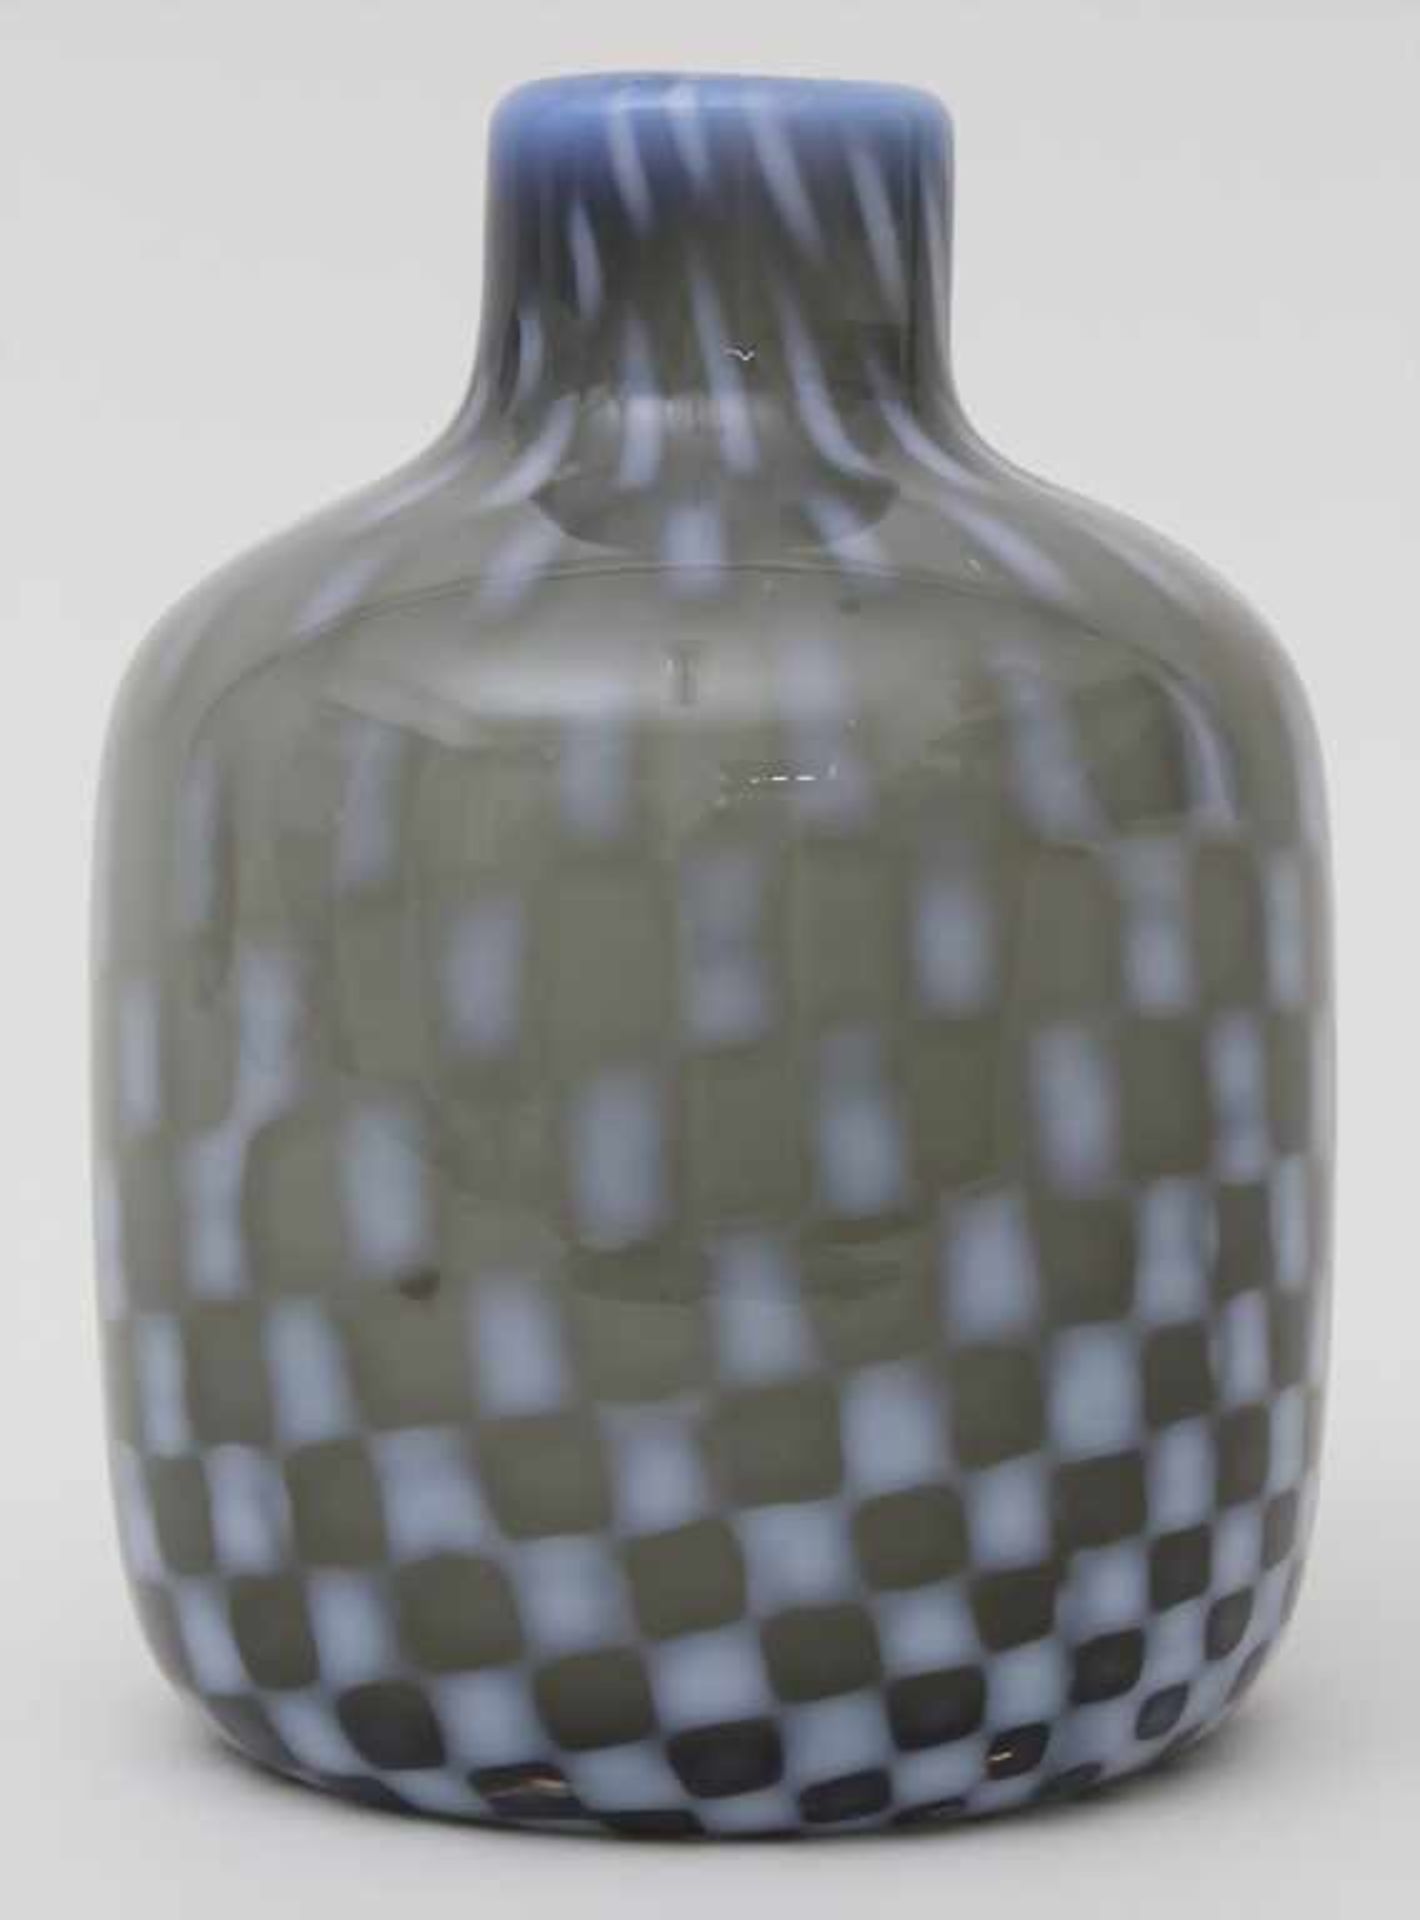 Vase / A vase, wohl Barovier und Toso, Murano, 70/80er JahreMaterial: rauchfarbenes Glas, opak